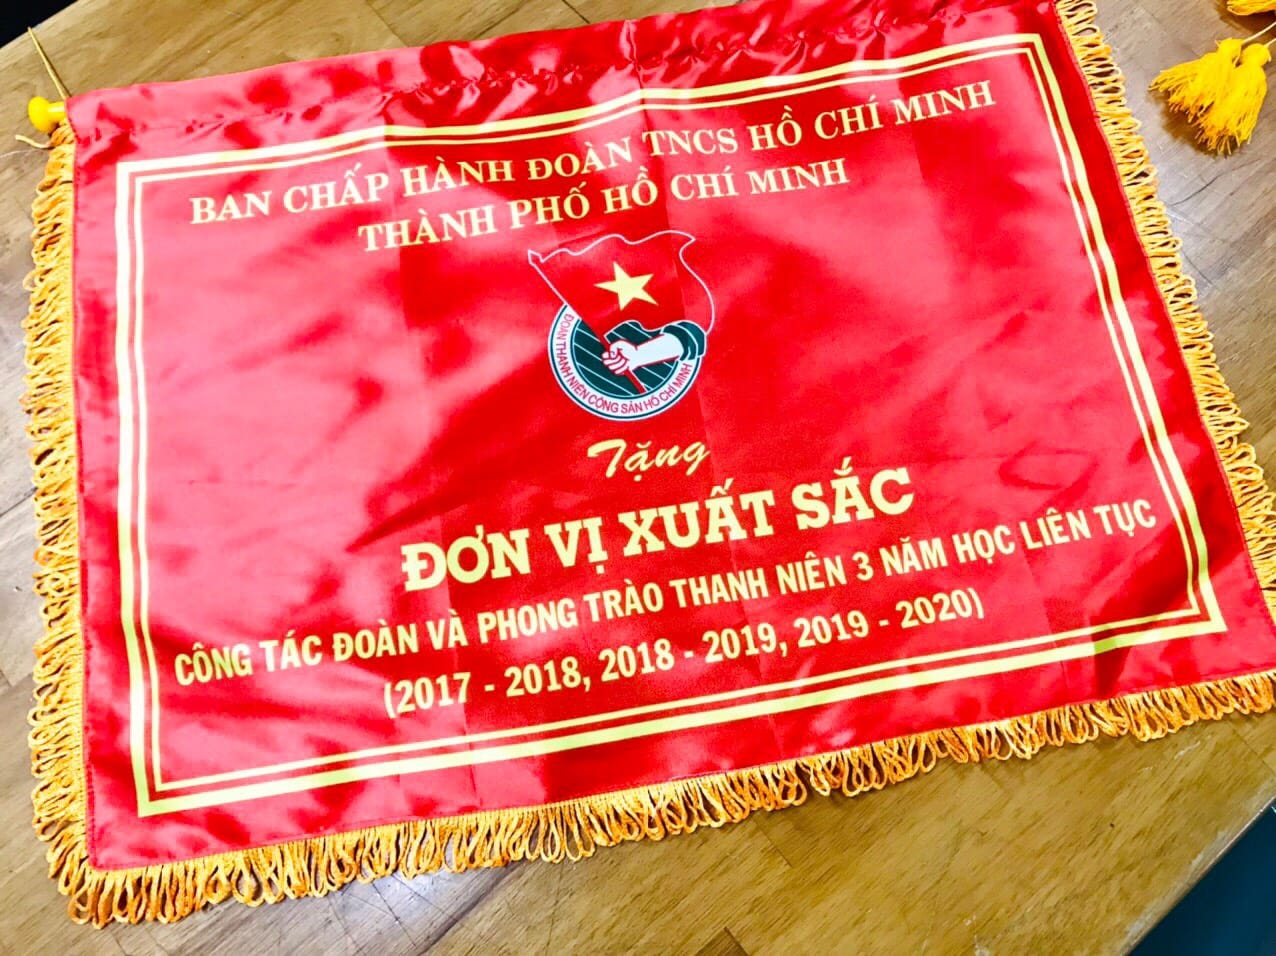 Kỷ niệm 90 năm thành lập đoàn thanh niên cộng sản Hồ Chí Minh, Ban chấp hành đoàn Viện kỹ thuật được Thành đoàn TP. HCM khen thưởng Đơn vị đoàn xuất sắc trong 2 năm liền 4